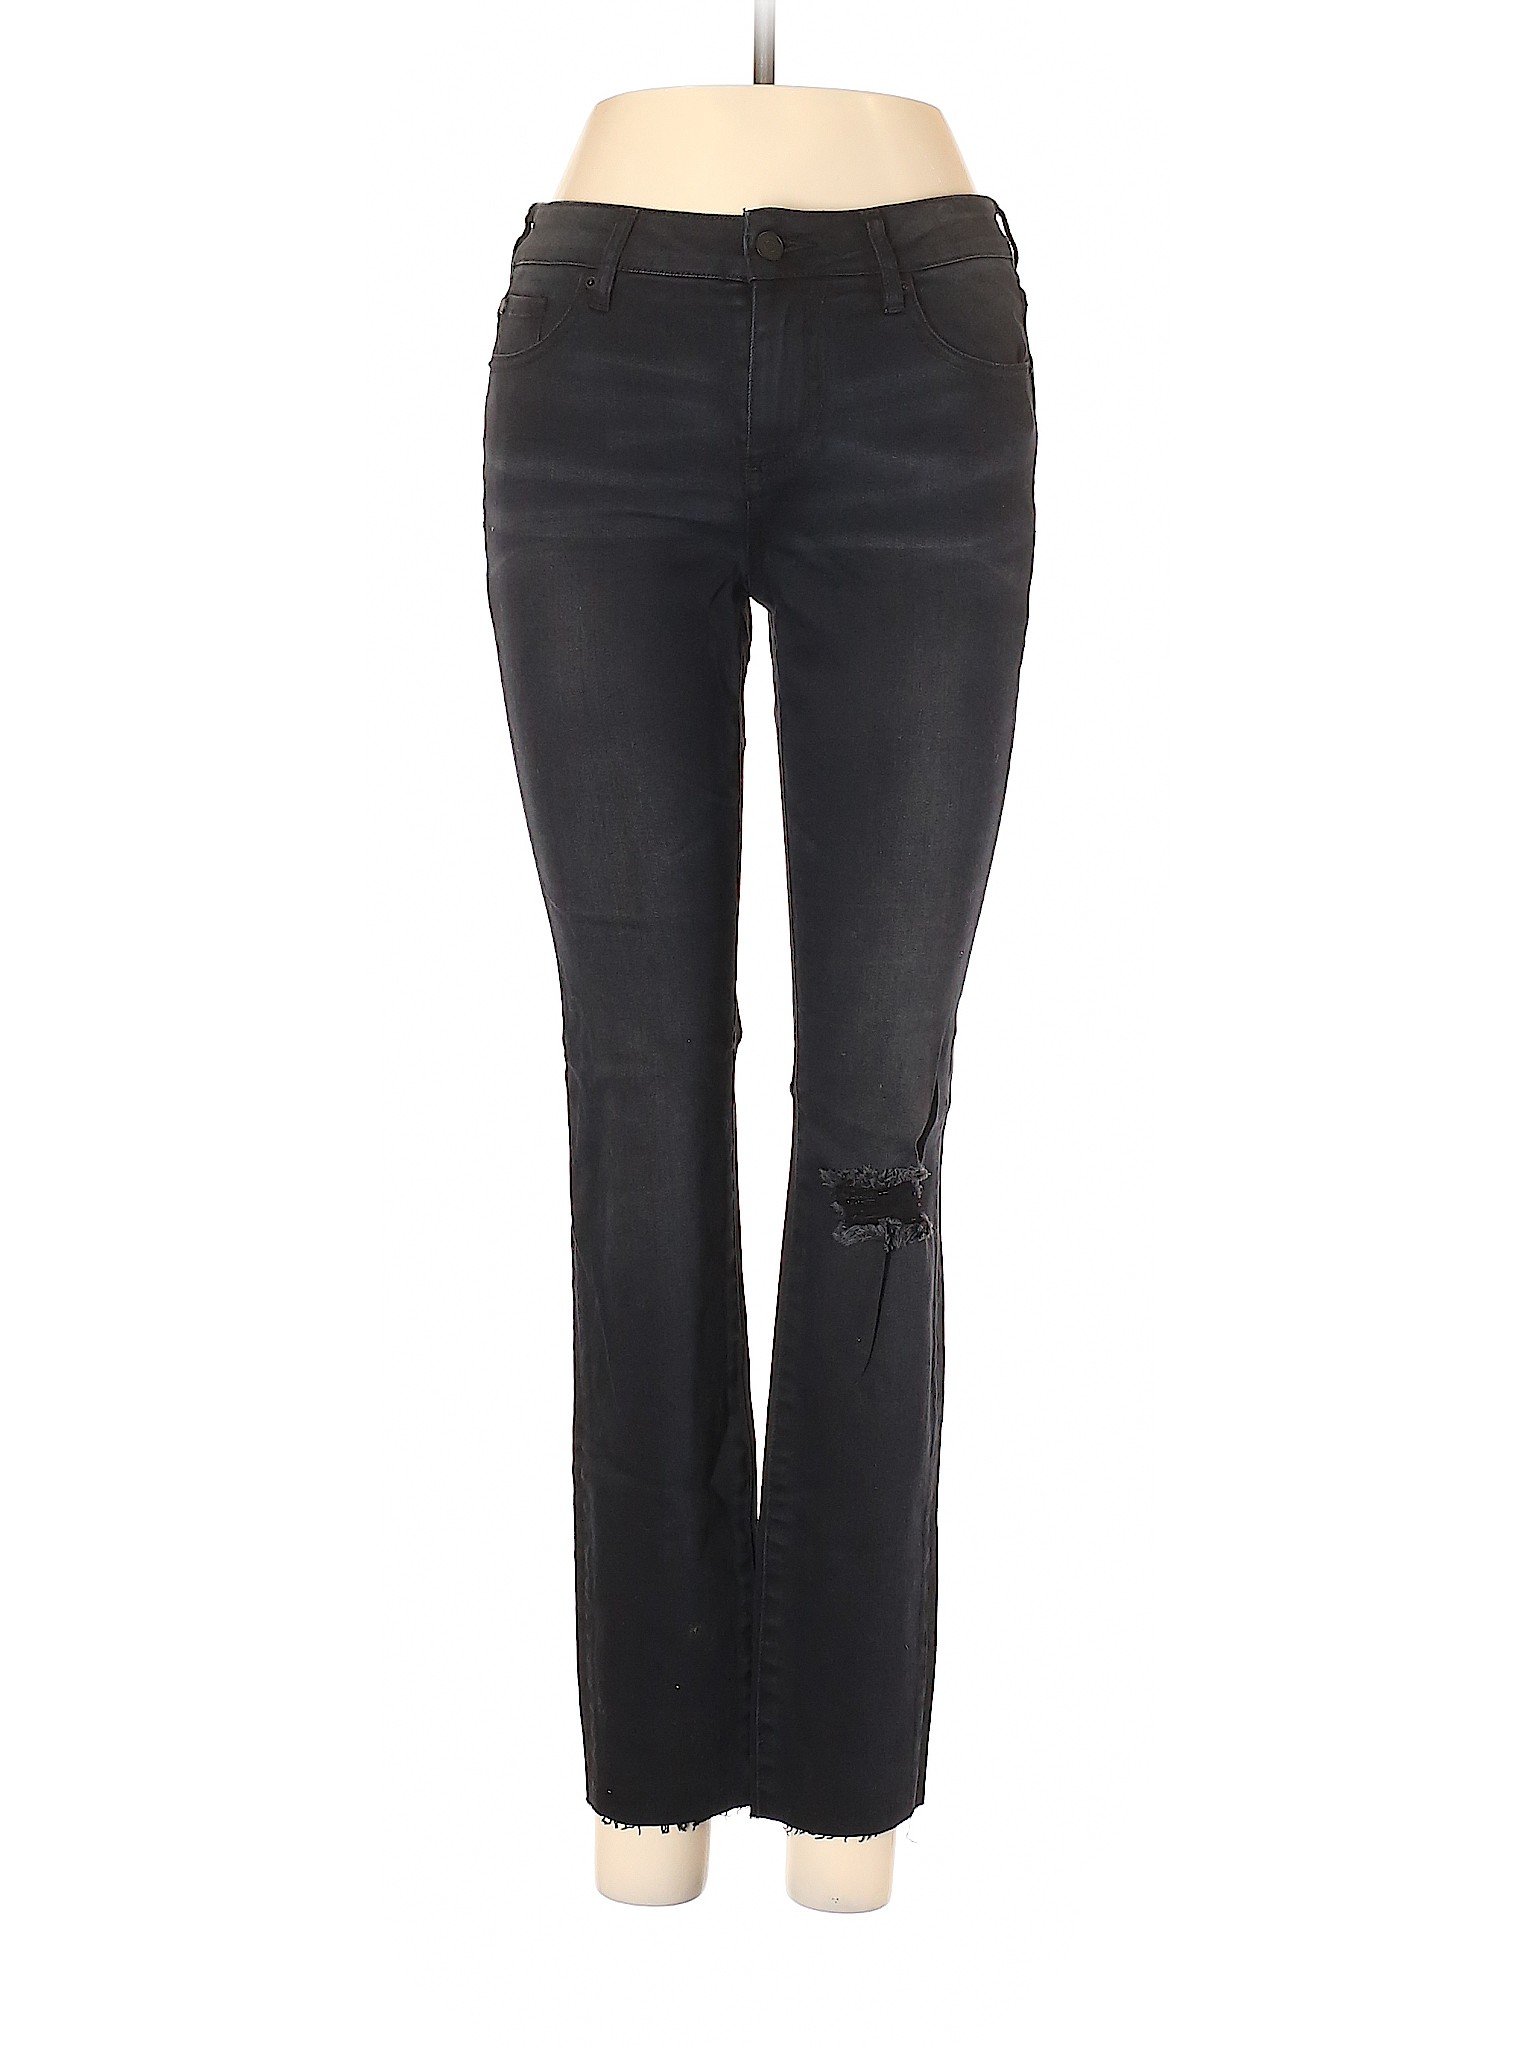 Armani Exchange Women Black Jeans 27W | eBay